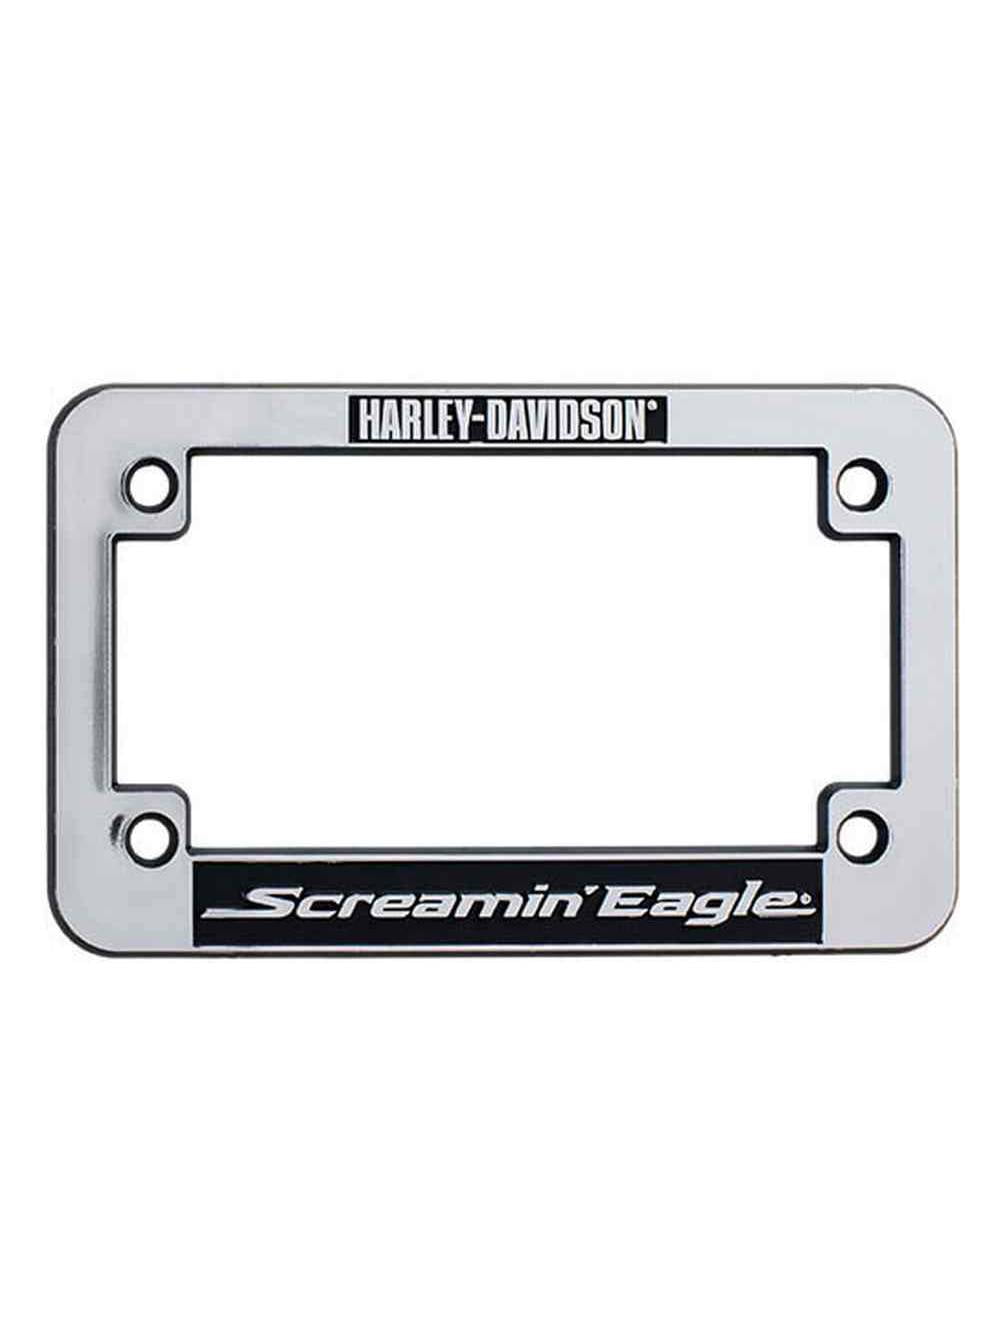 Harley-Davidson Chrome Metal License Plate Frame for Cars & Trucks